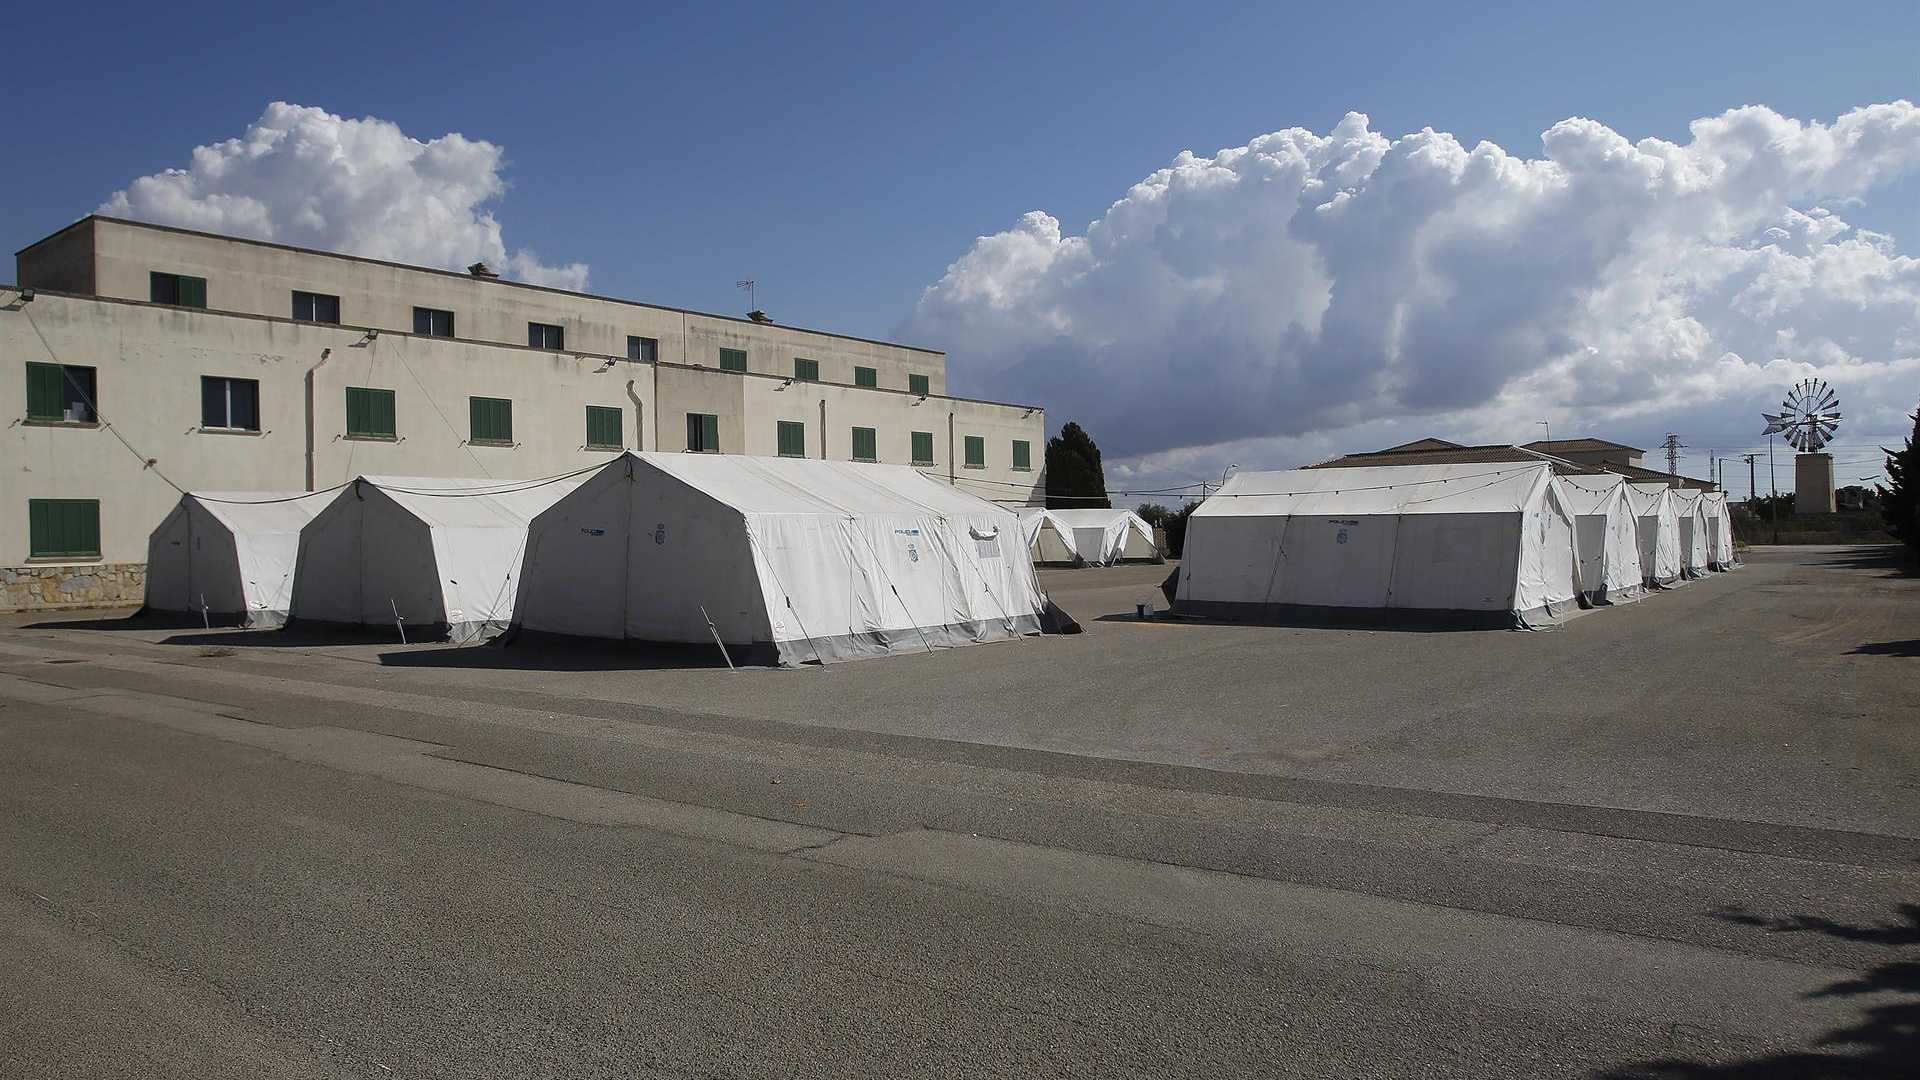 Tiendas de campaña colocadas en las instalaciones del antiguo cuartel de Son Tous para recibir migrantes llegados en octubre a Baleares. Foto: Isaac Buj – Europa Press